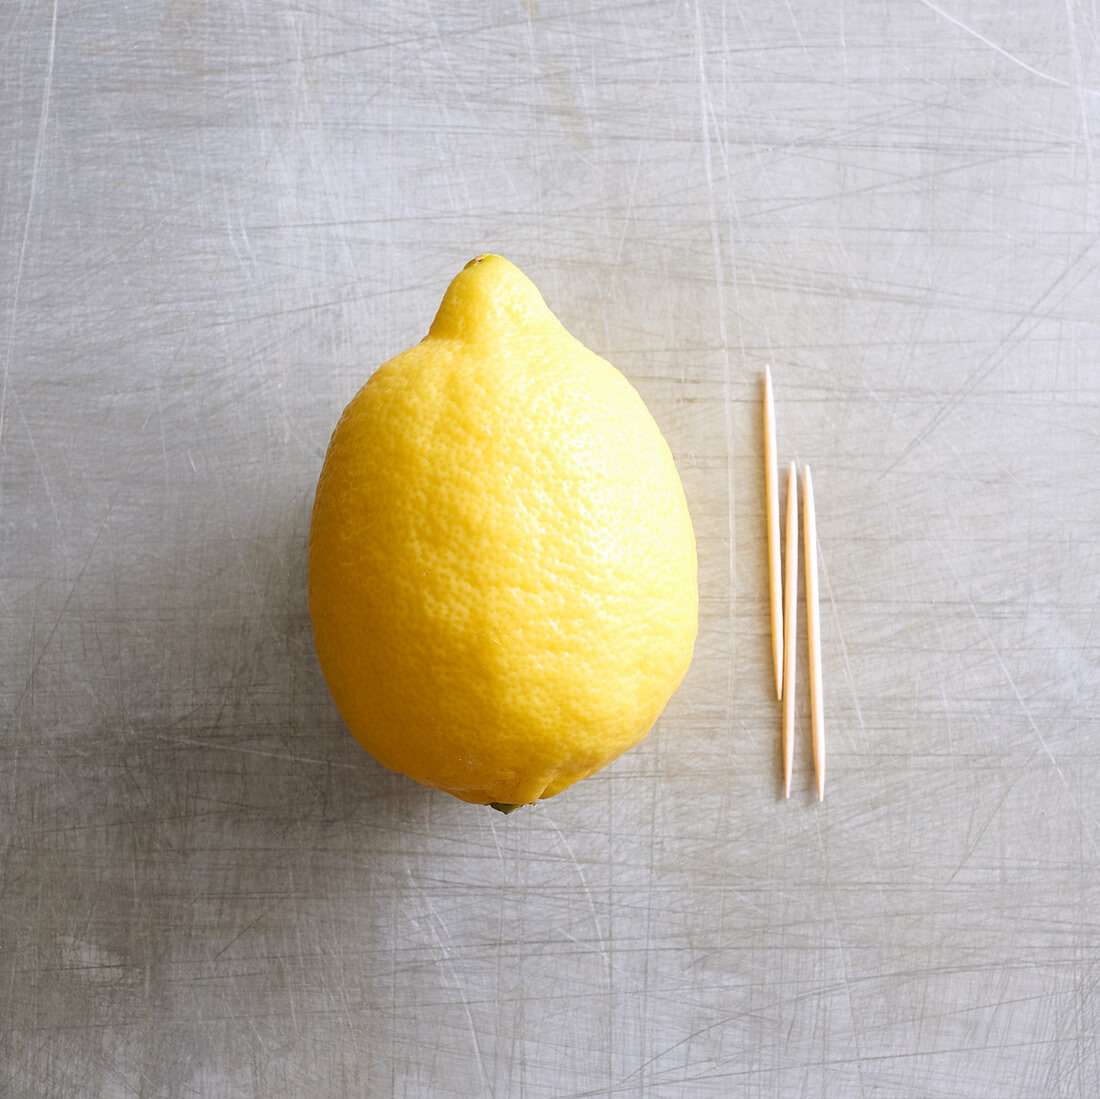 Ein Spritzer Zitrone - Zahnstocher in Zitrone drücken und etwas pressen